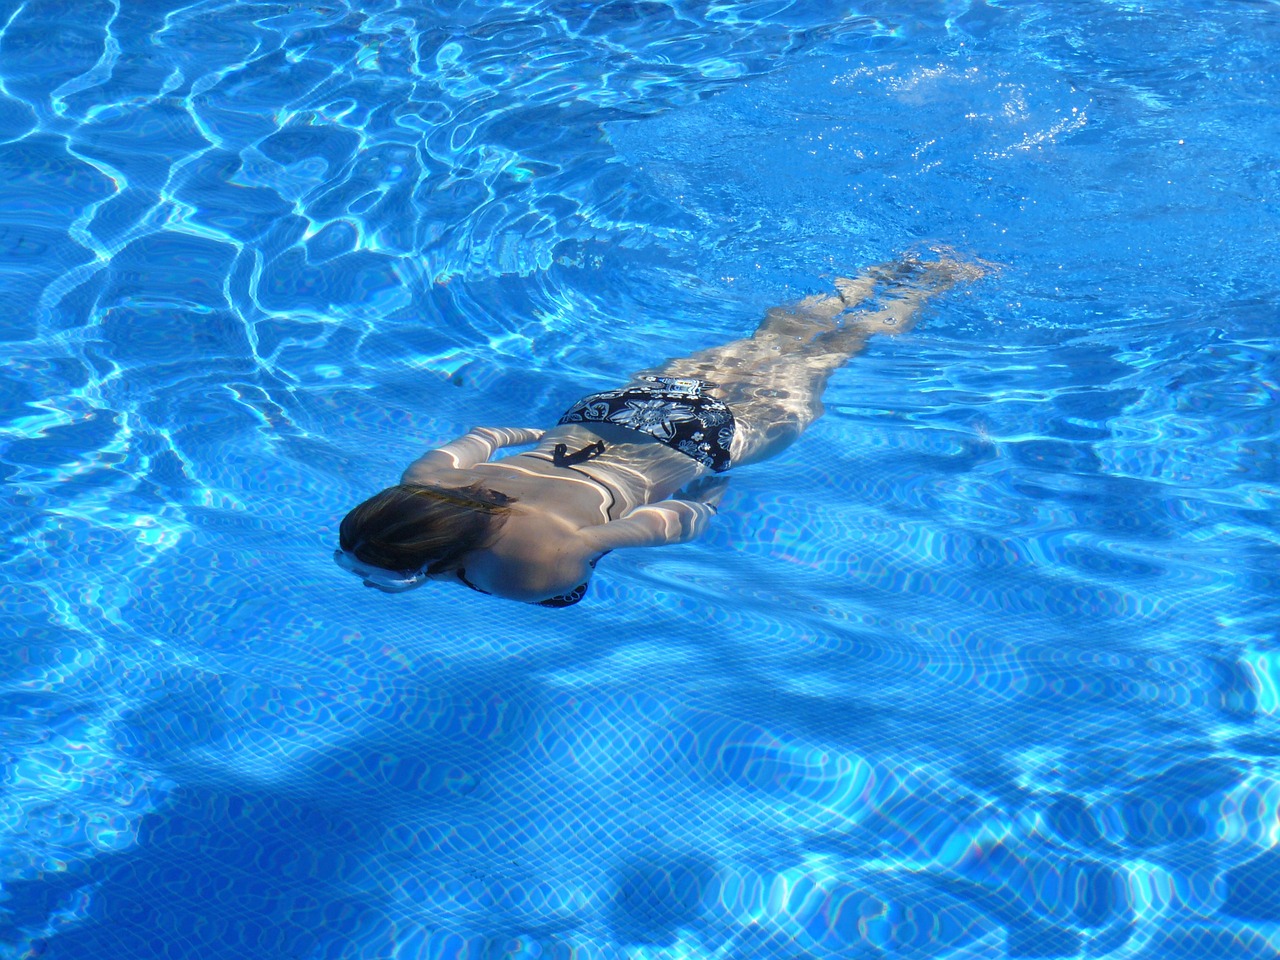 Esta refrescante foto captura a una mujer en bikini nadando con gracia en una piscina. El agua cristalina resalta su figura mientras se desliza suavemente a través de ella.